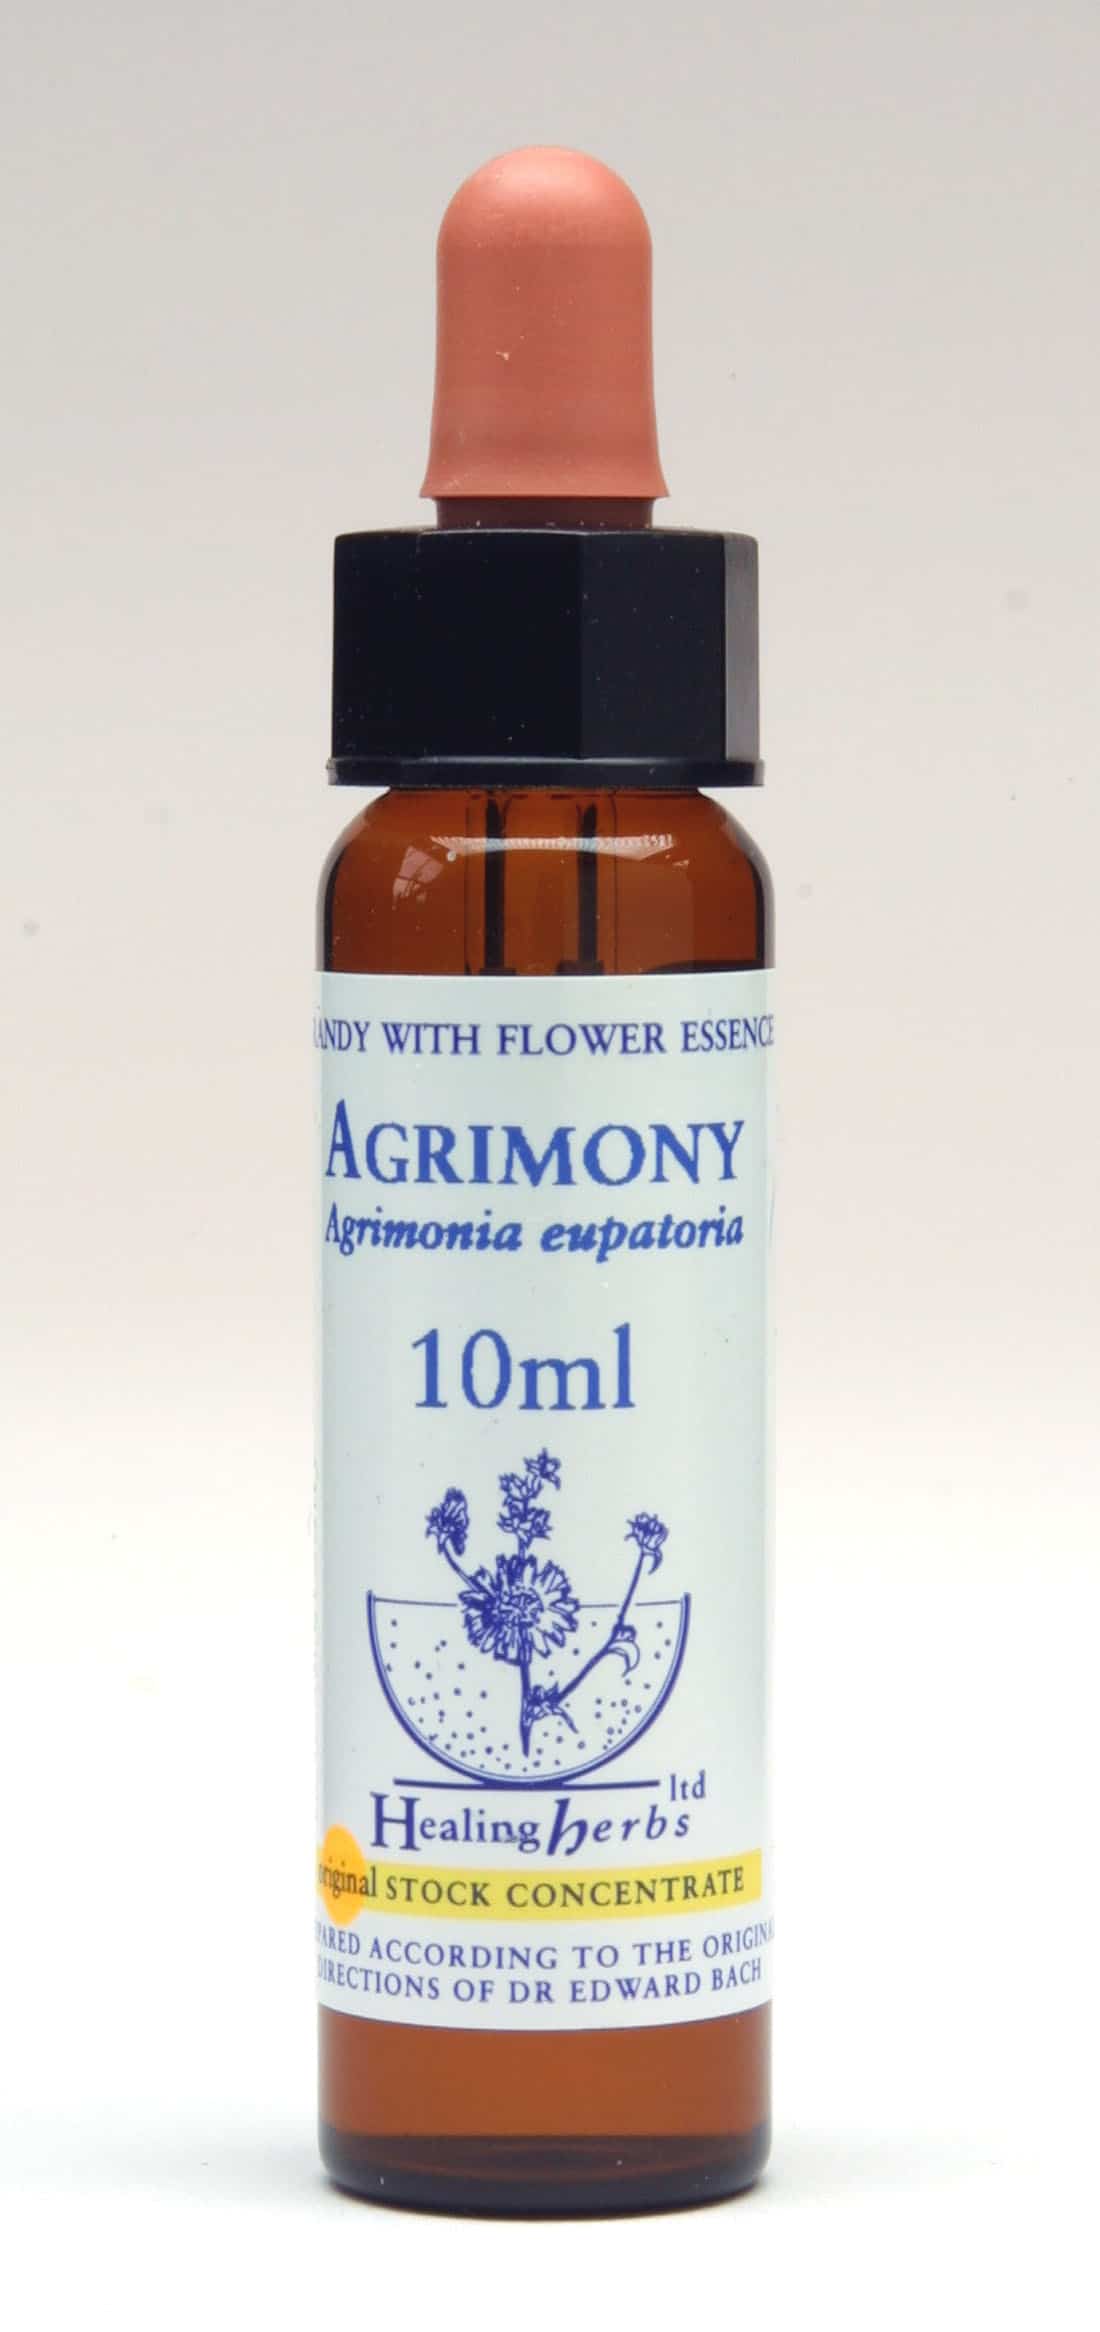 Agrimony Flor de Bach Healing Herbs